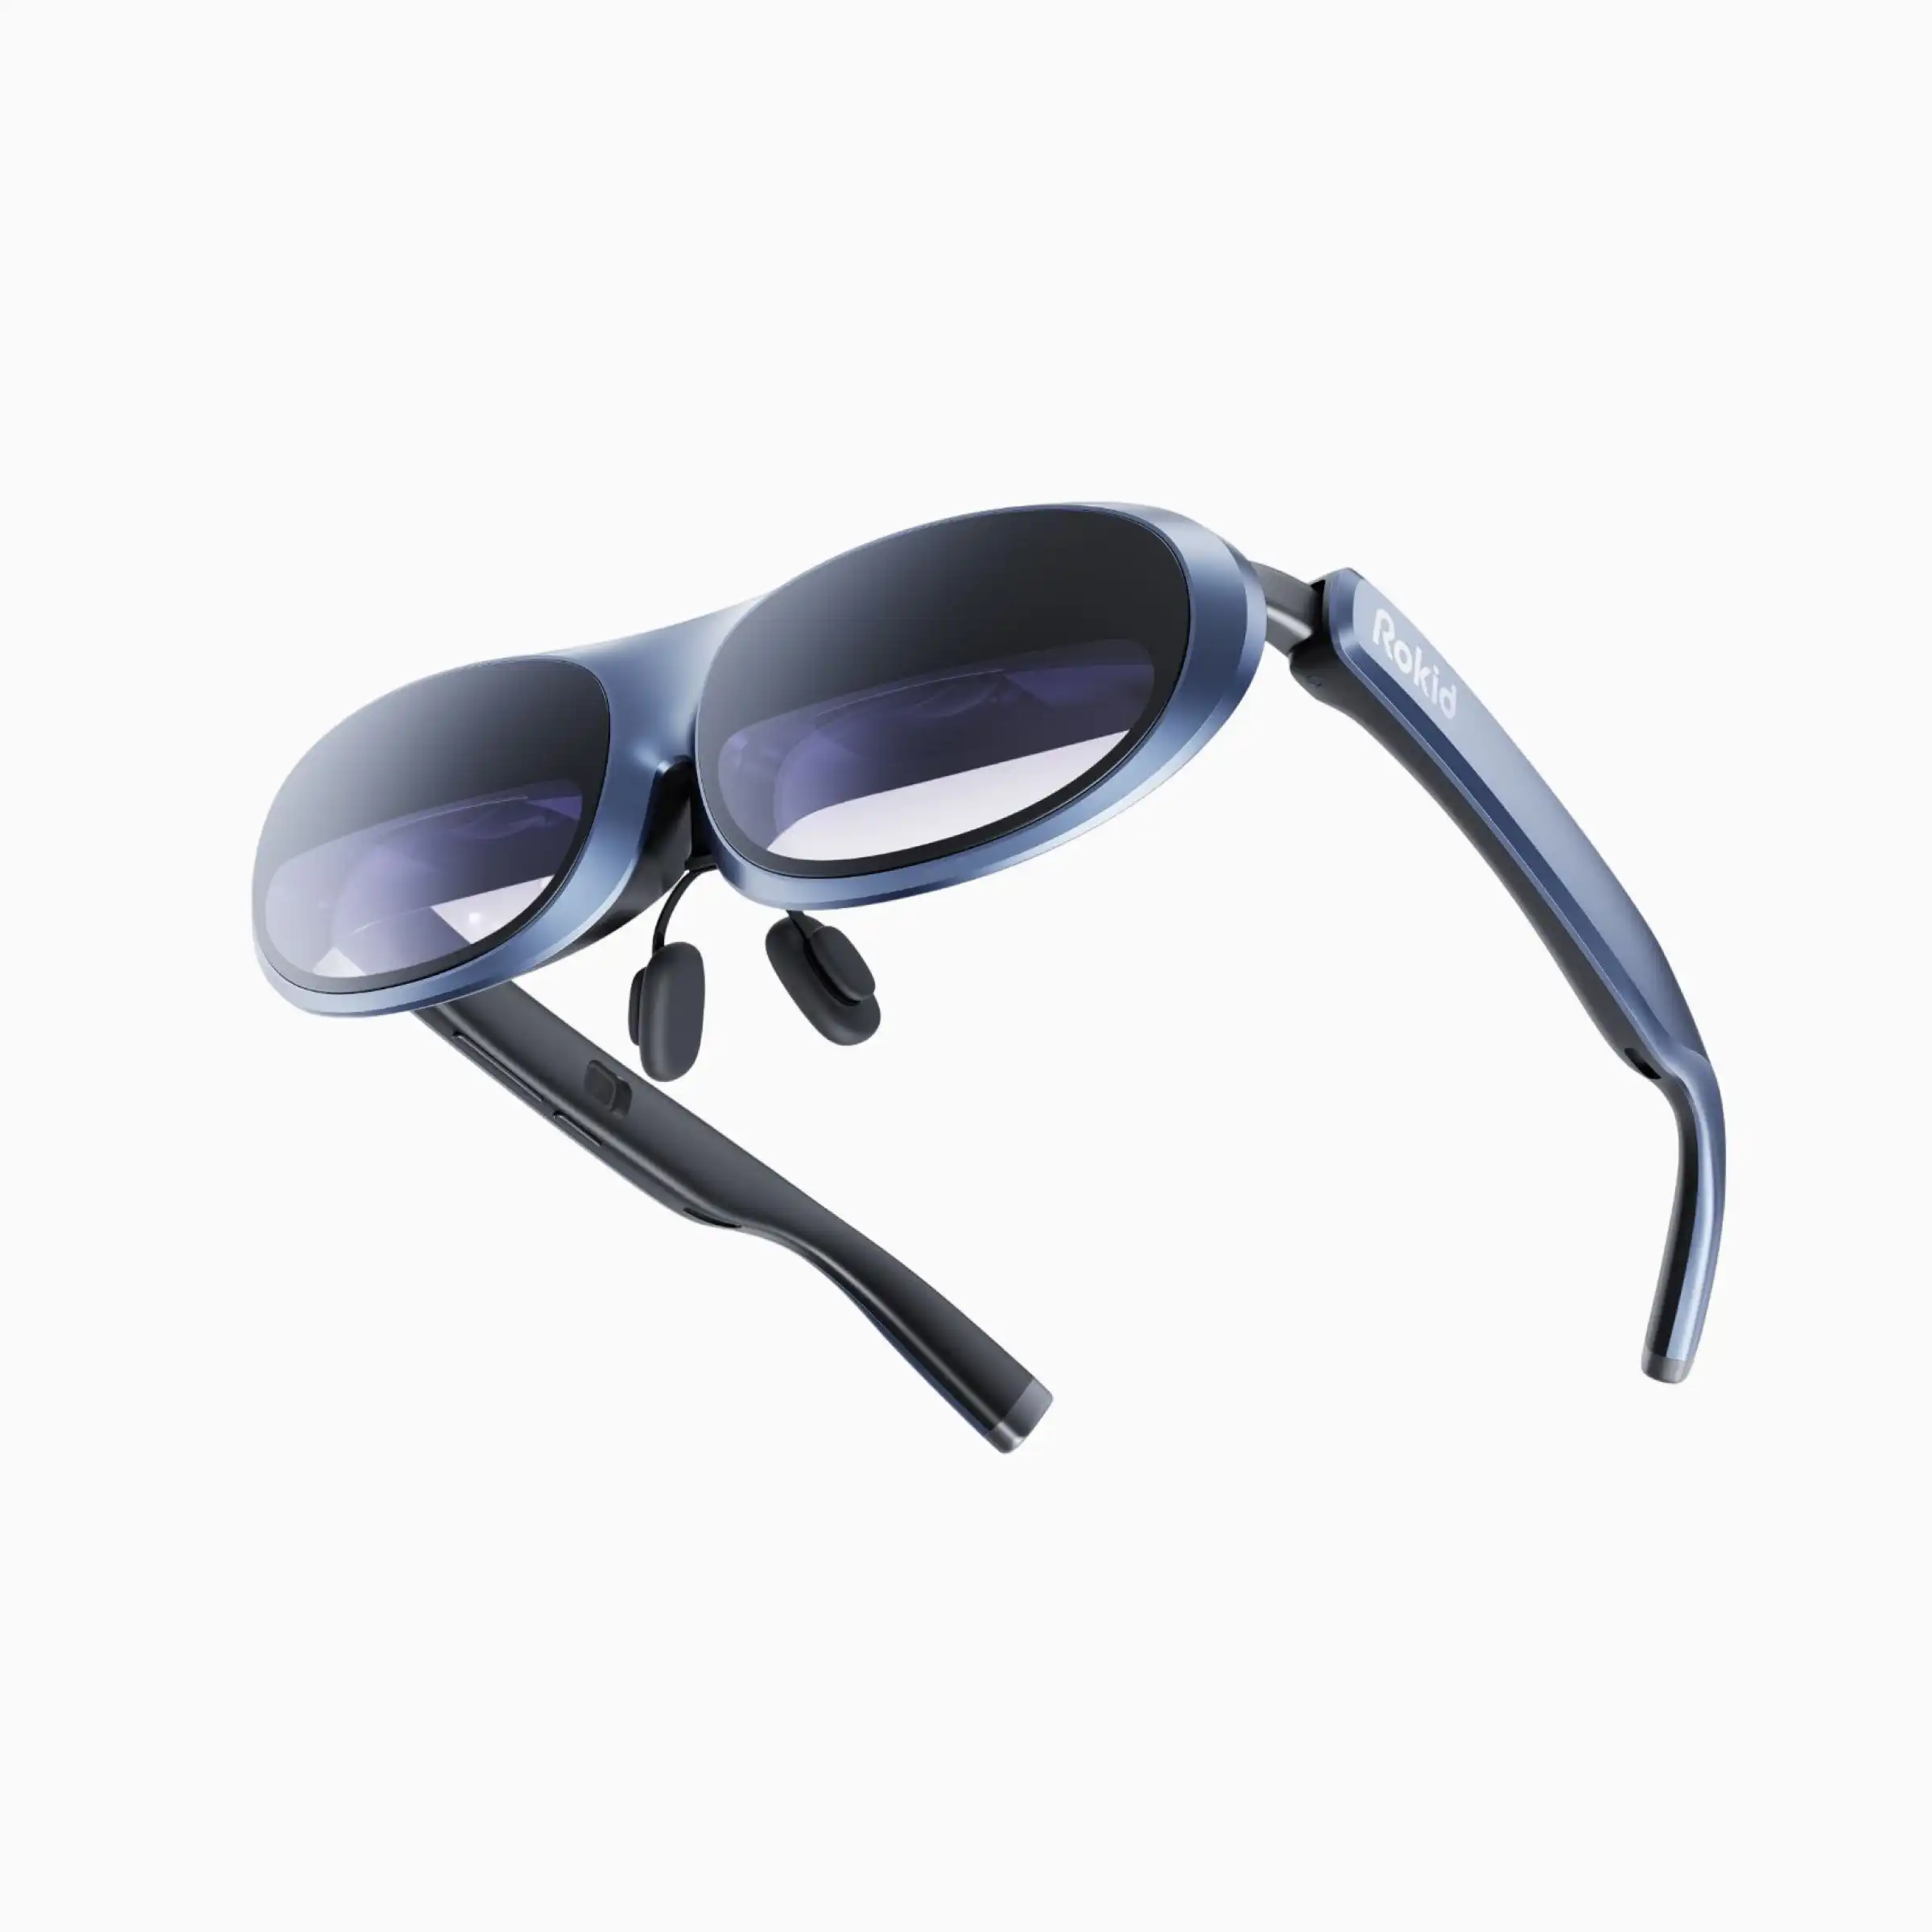 売れ筋Wupro x Rokid Max ArGlasses 3Dサポート120Hzリフレッシュレート250インチ画像サイズ4KスマートメタAR/VRメガネ